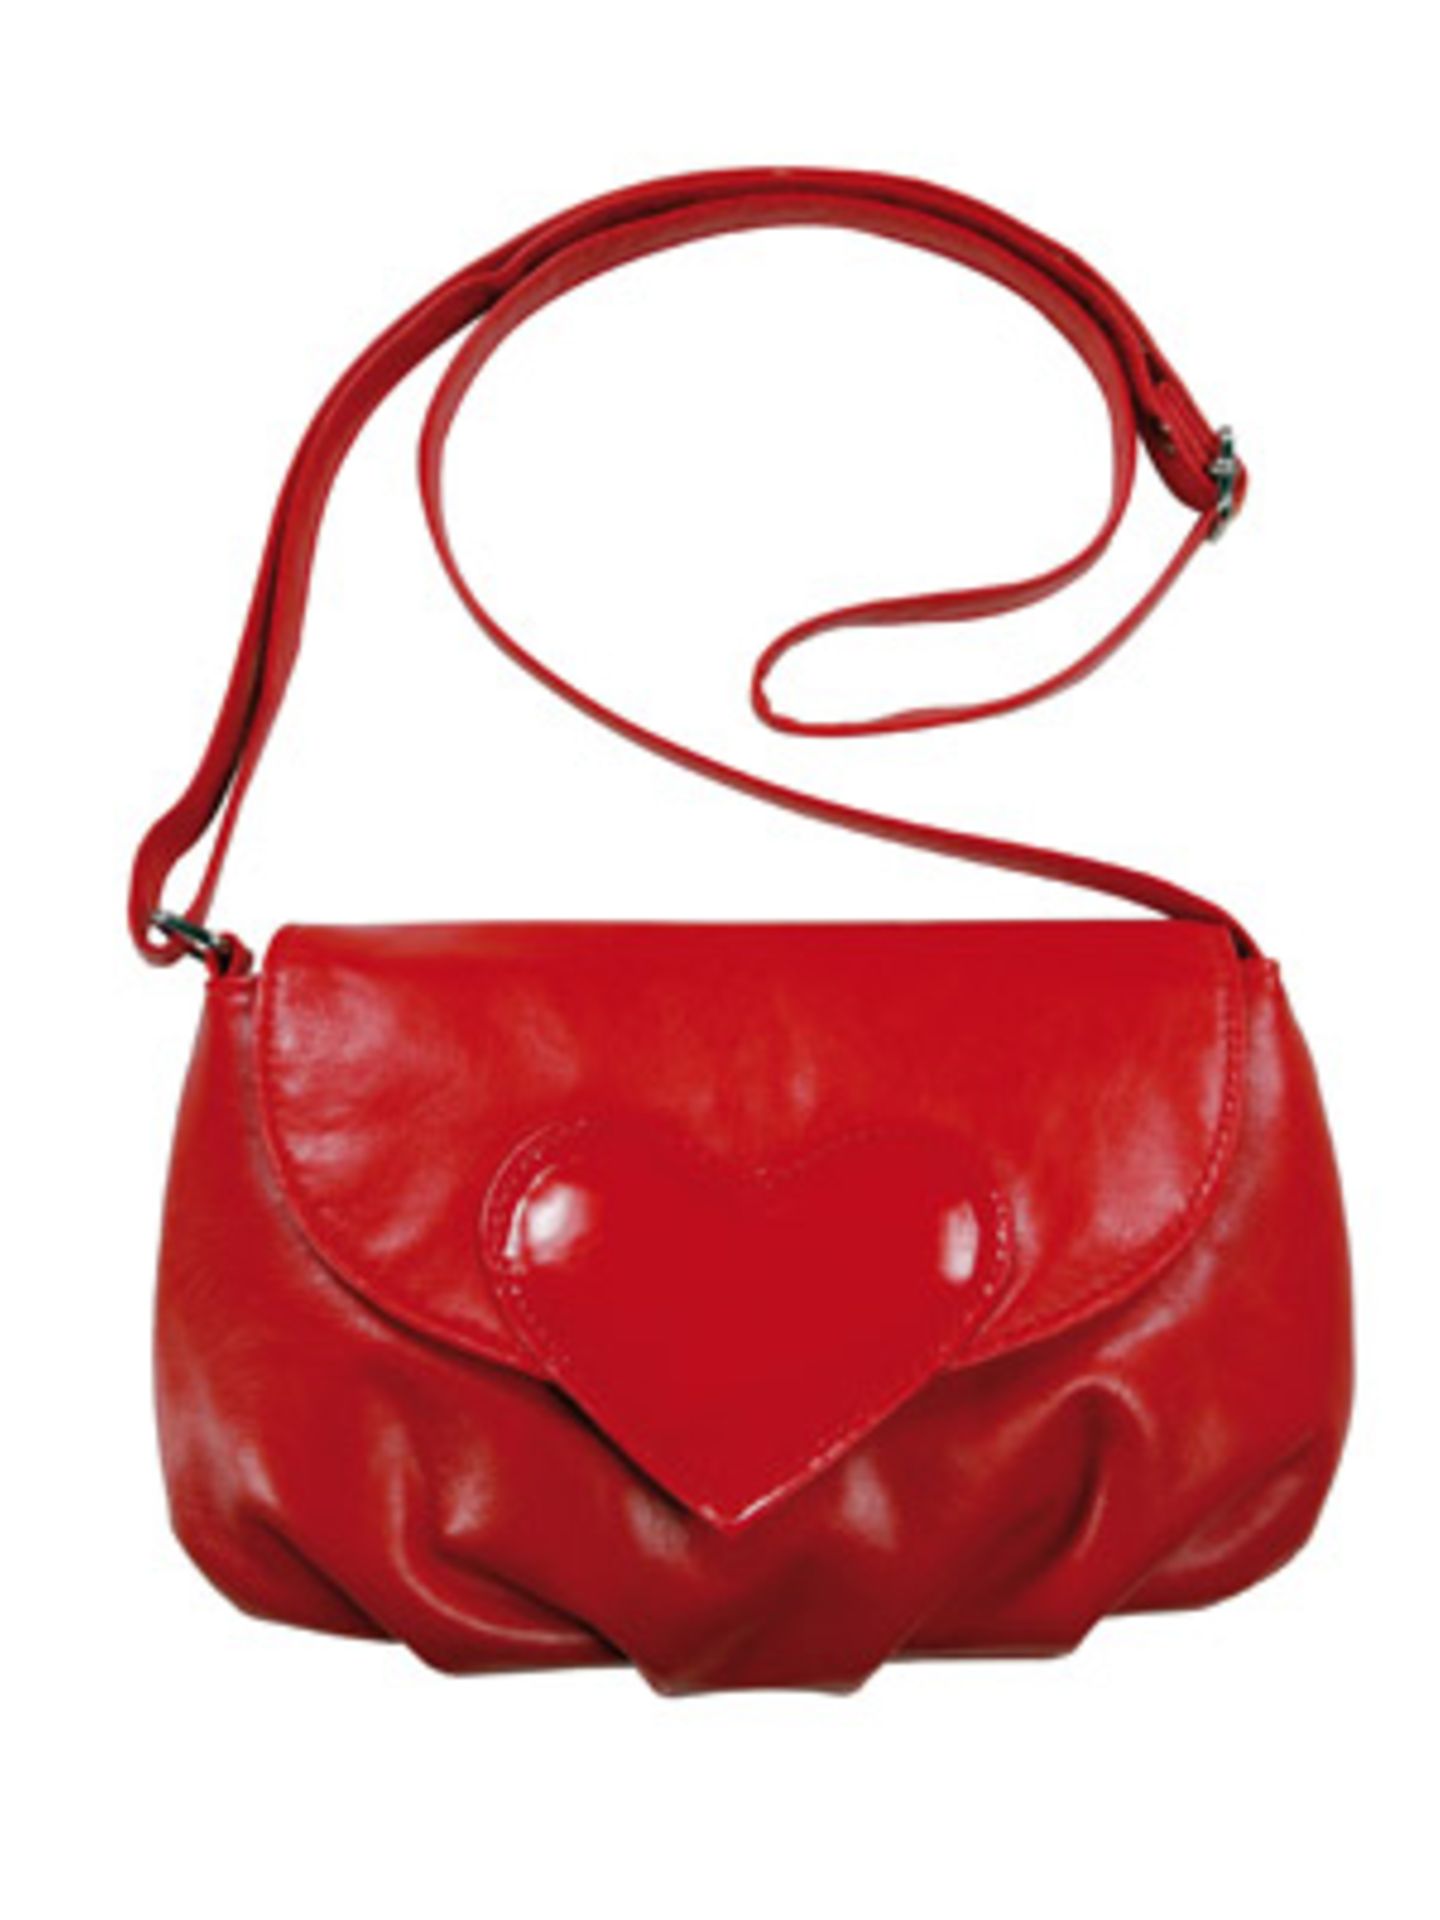 Rote Tasche mit Herzverschluss von K&L, um 8 Euro.